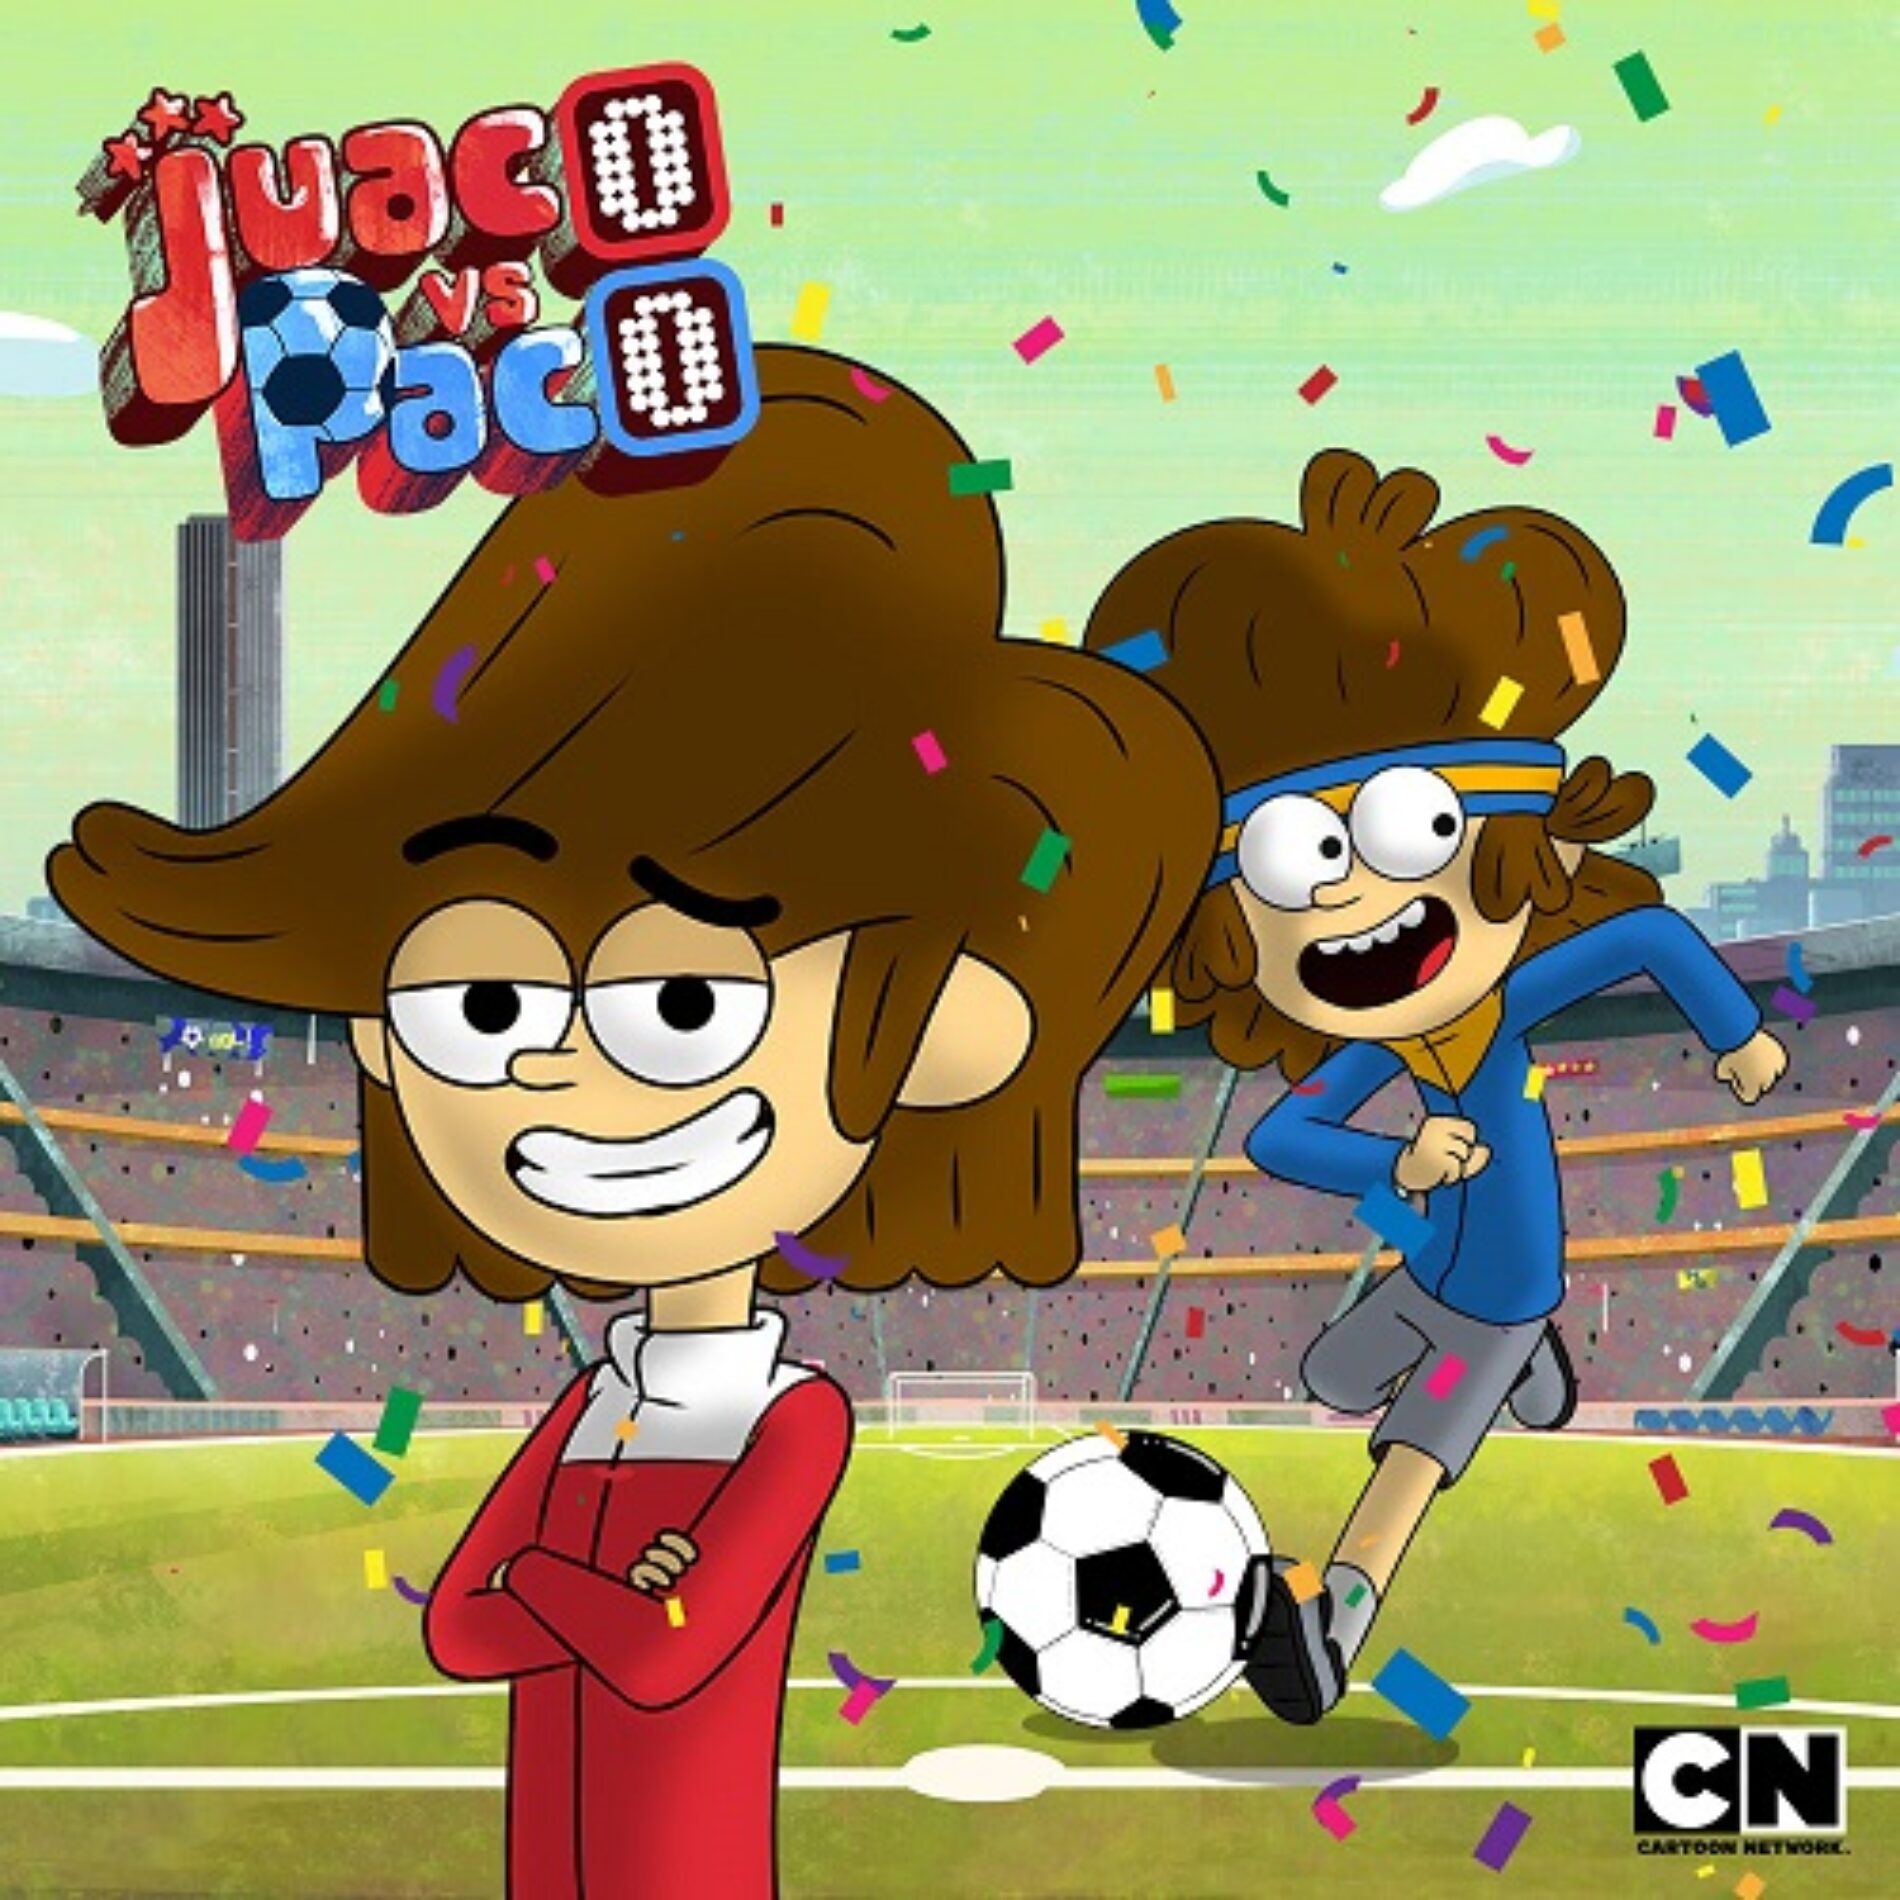 Cartoon Network se suma a la pasión del fútbol con ‘Juaco vs Paco’, nueva producción original para toda la familia